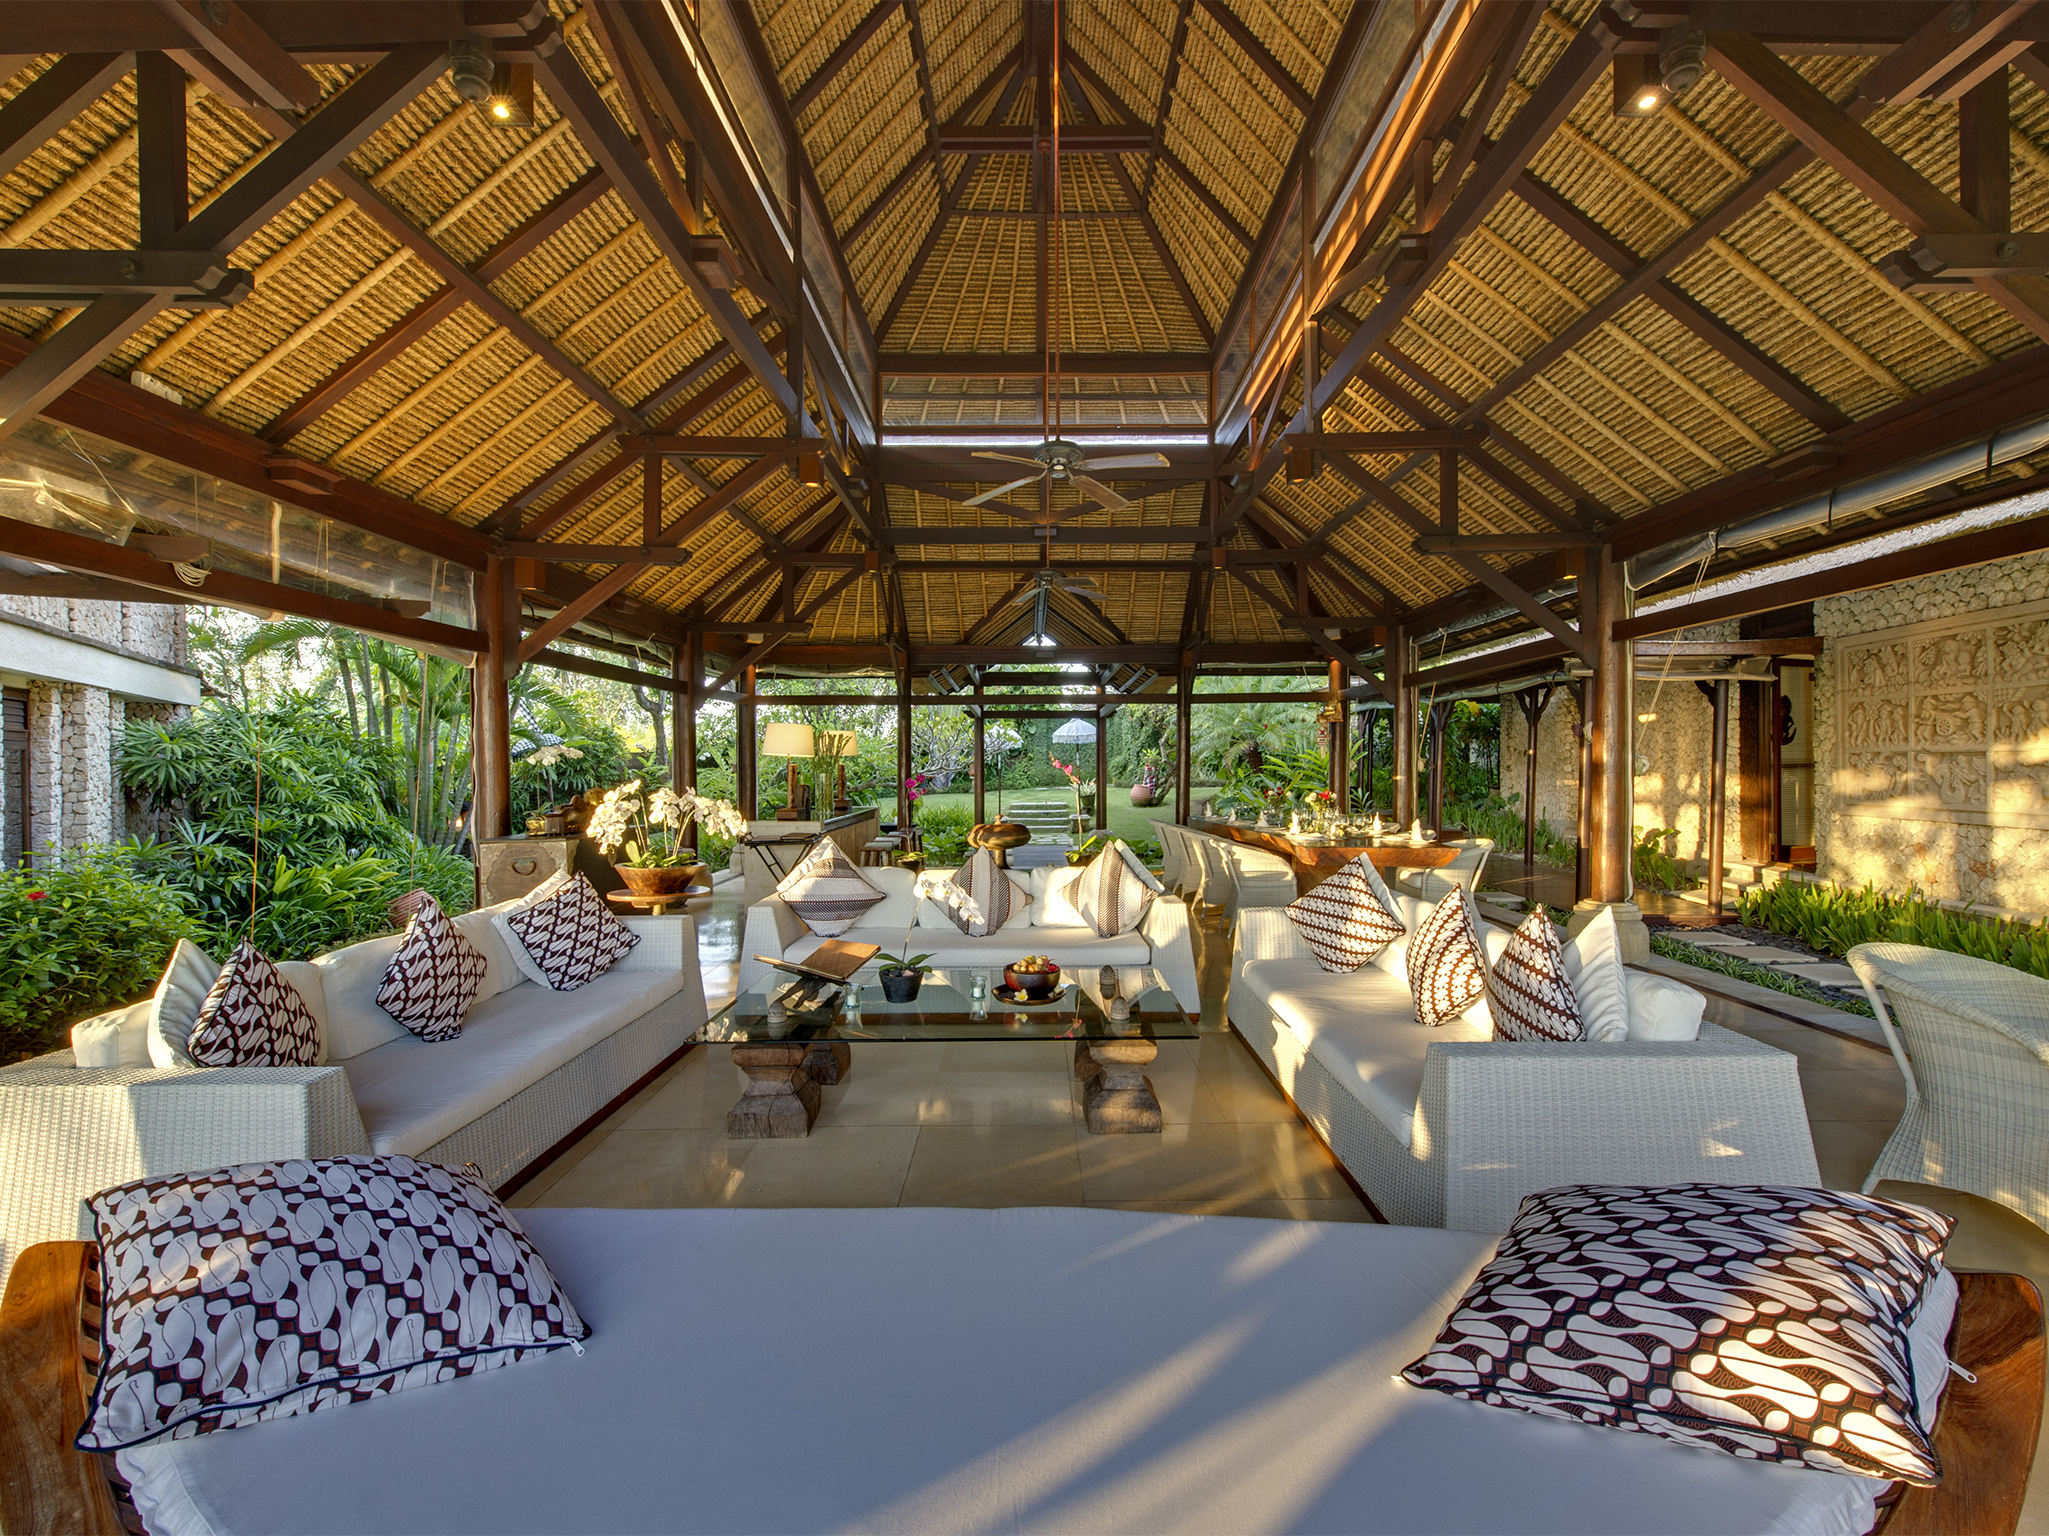 Villa Sungai Tinggi - Living area looking towards entrance - Sungai Tinggi Beach Villa, Canggu, Bali